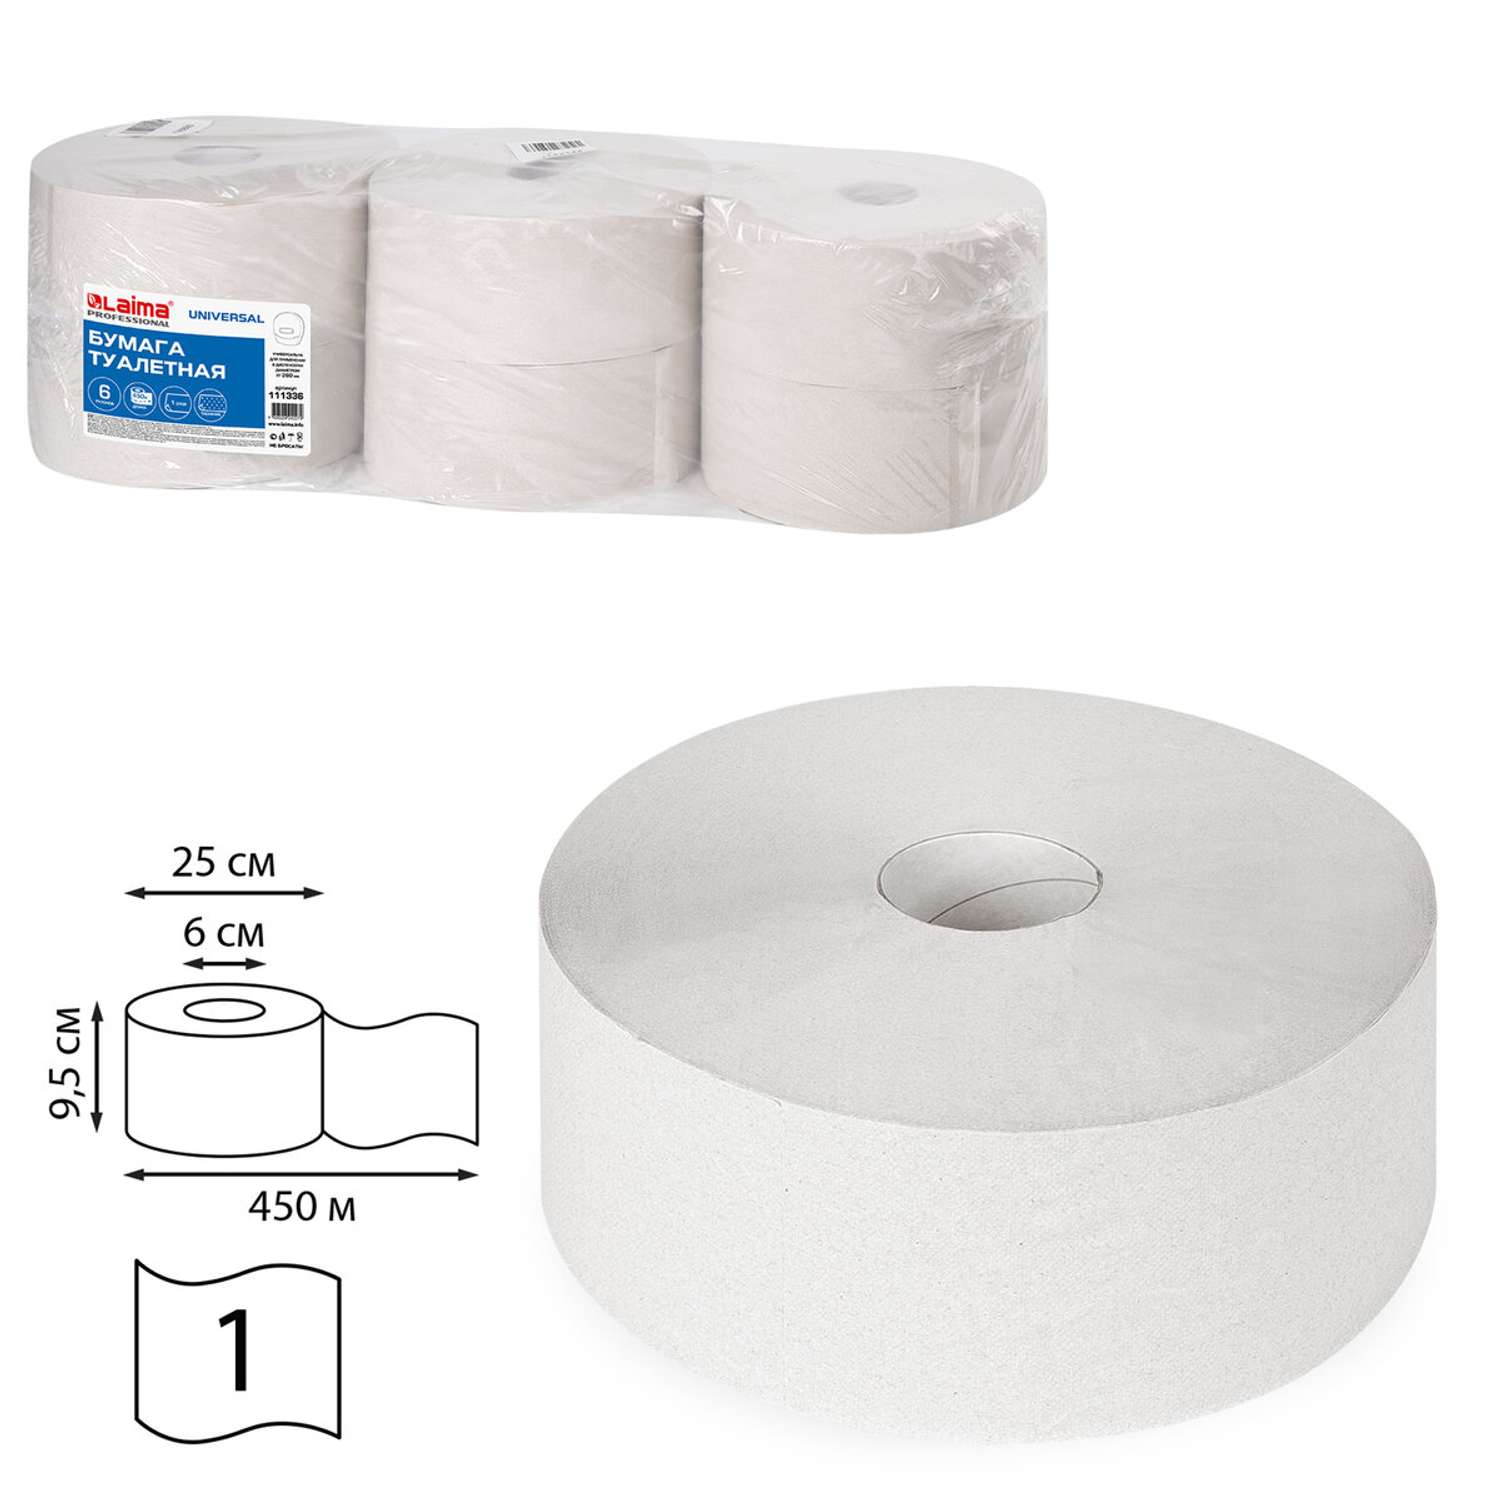 Туалетная бумага Лайма для диспенсера 450 м Universal 1-слойная 6 рулонов Система Т1 - фото 2